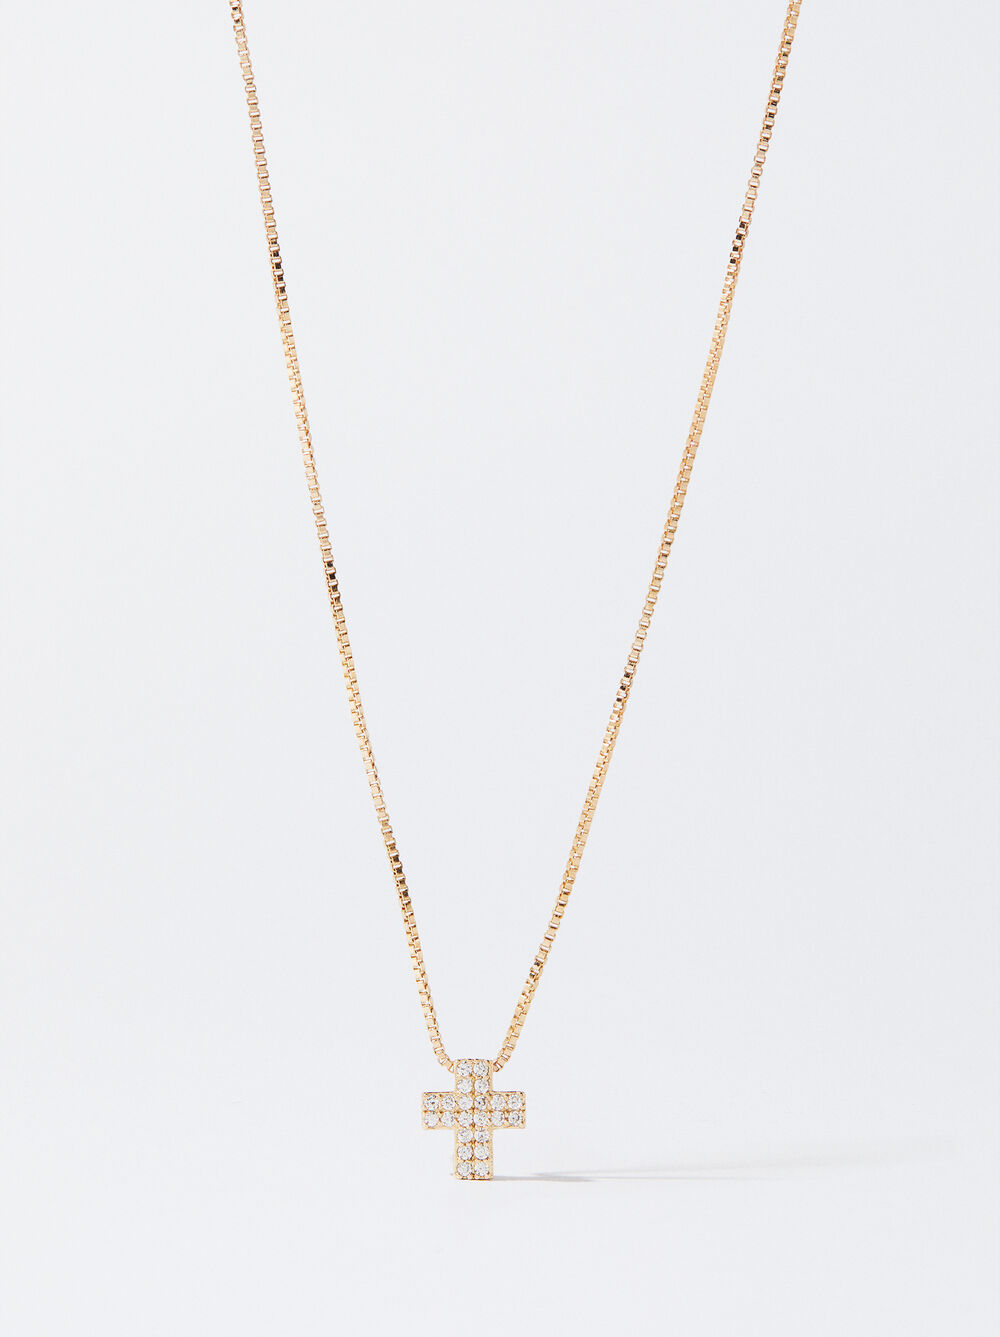 Silberne Halskette Mit Kreuz Und Zirkonia